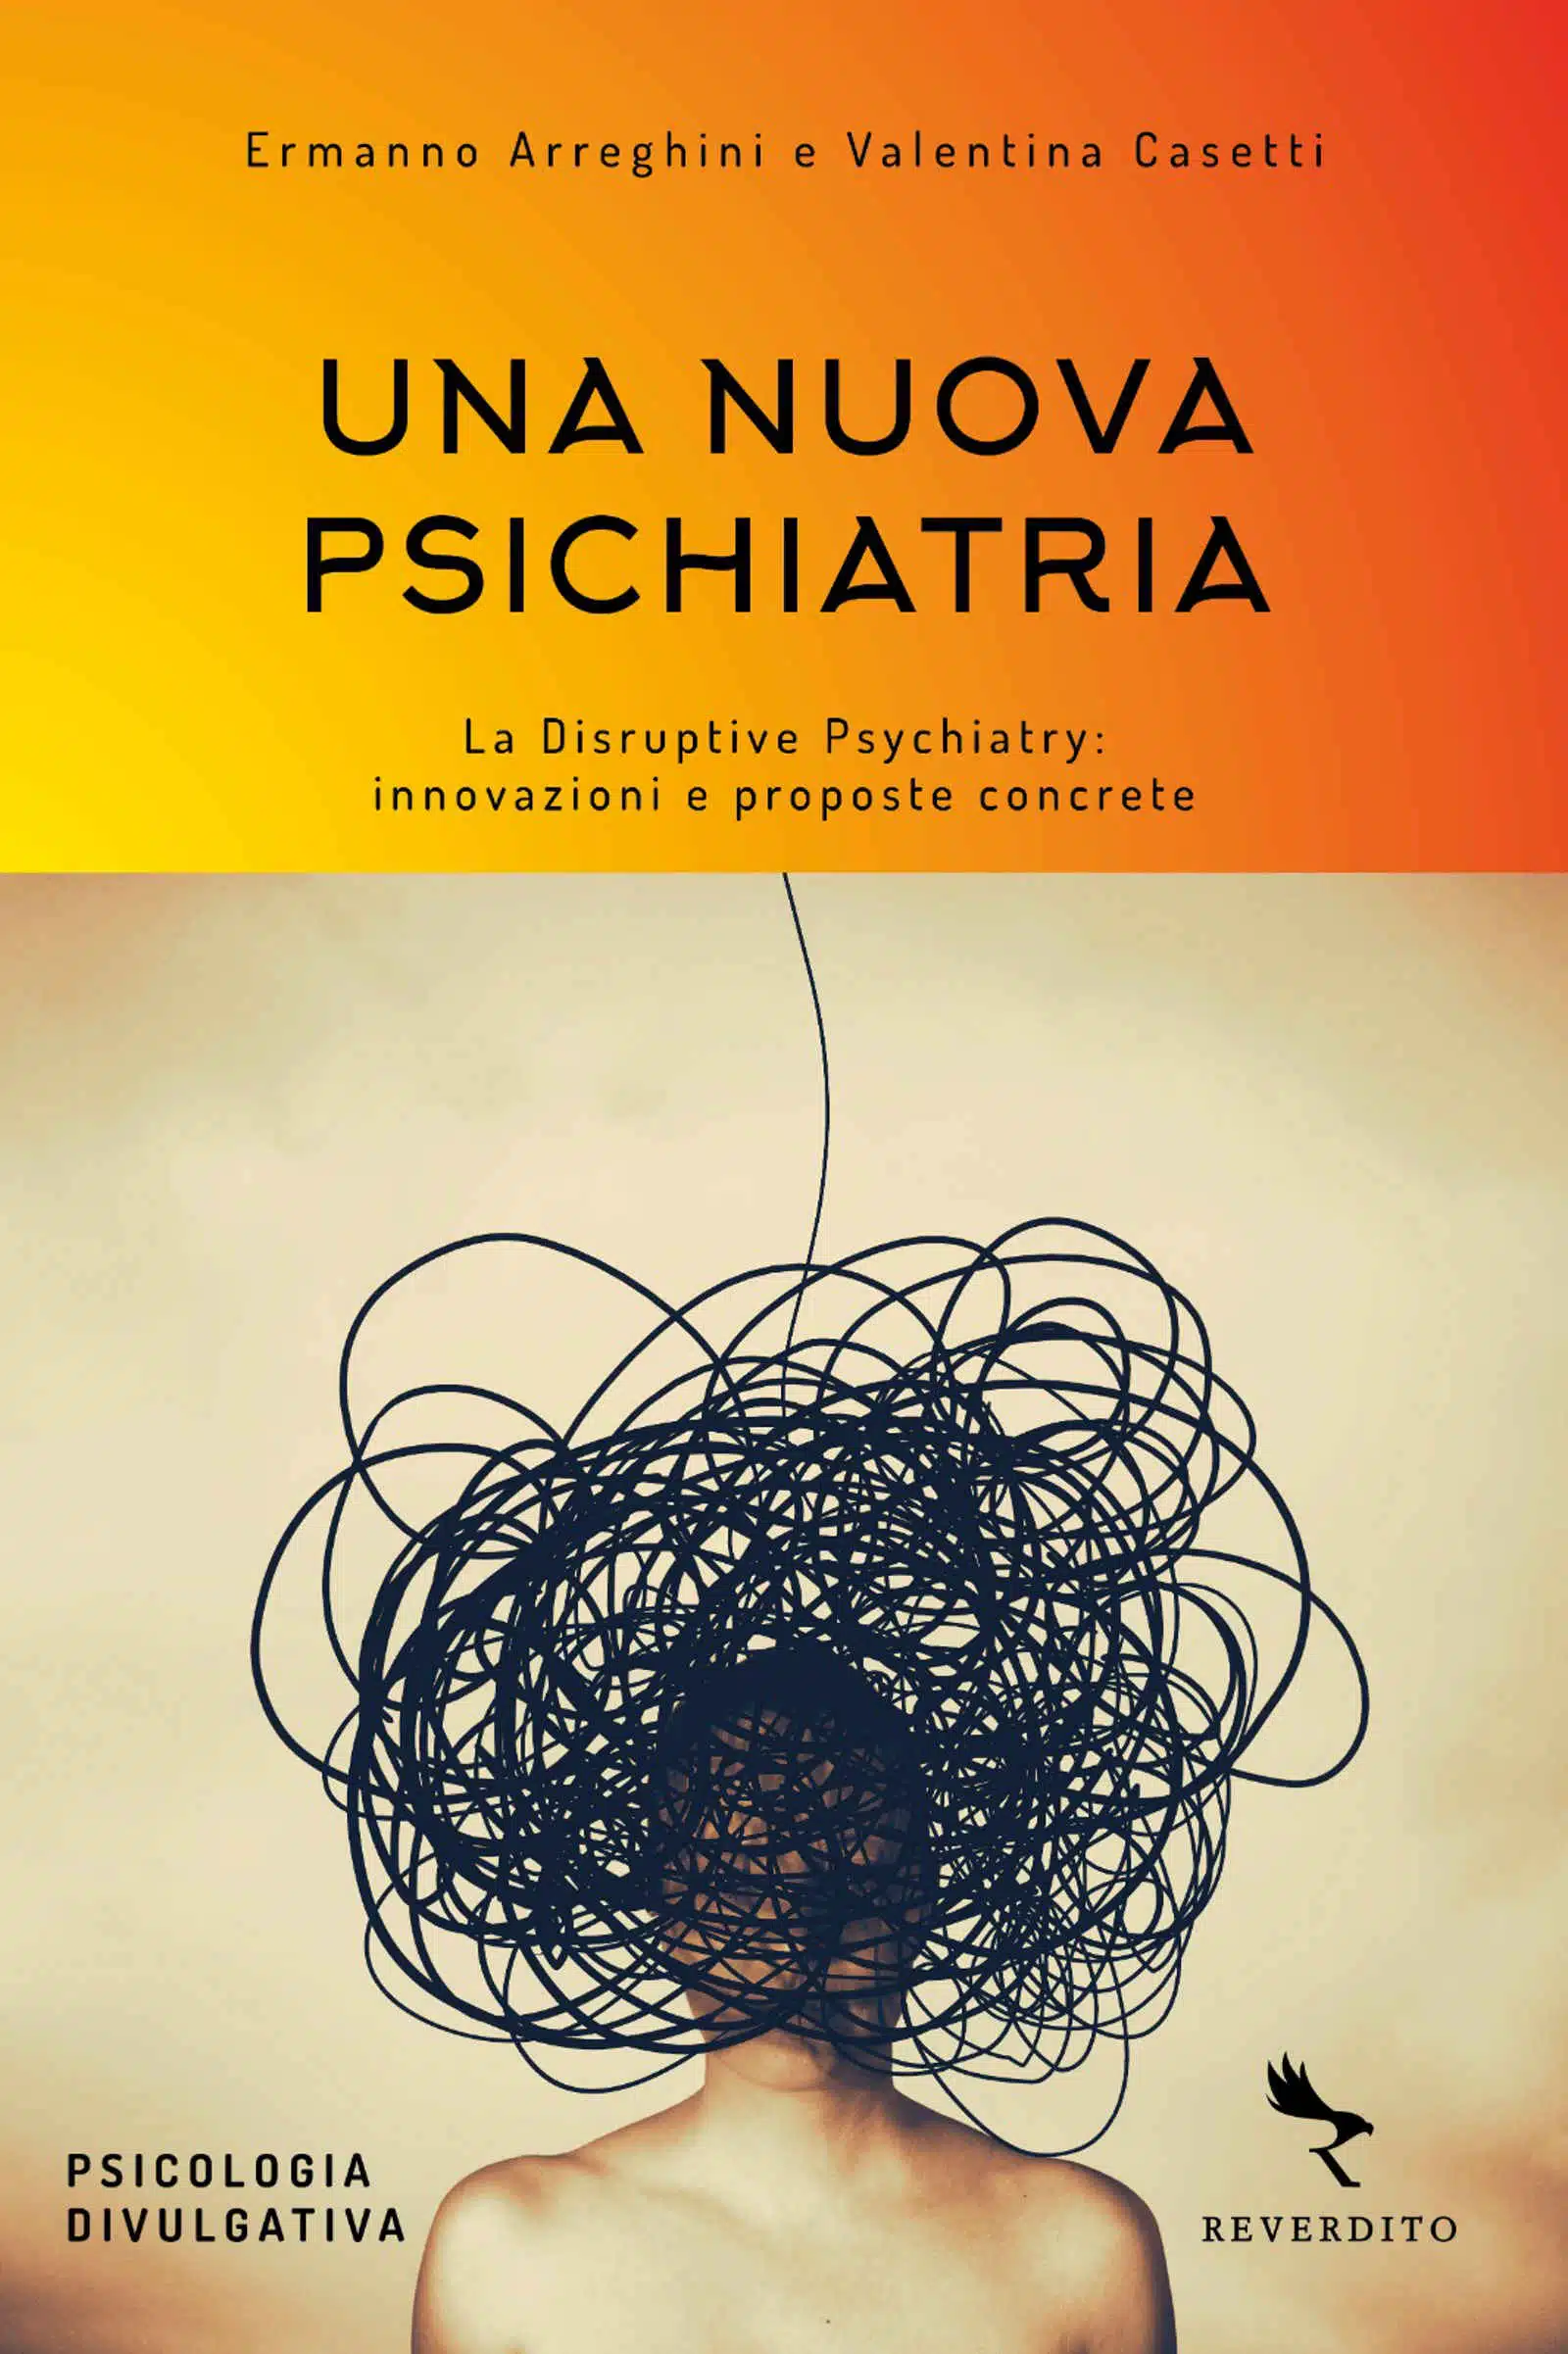 Una nuova psichiatria 2021 di E Arreghini e V Casetti Recensione Featured